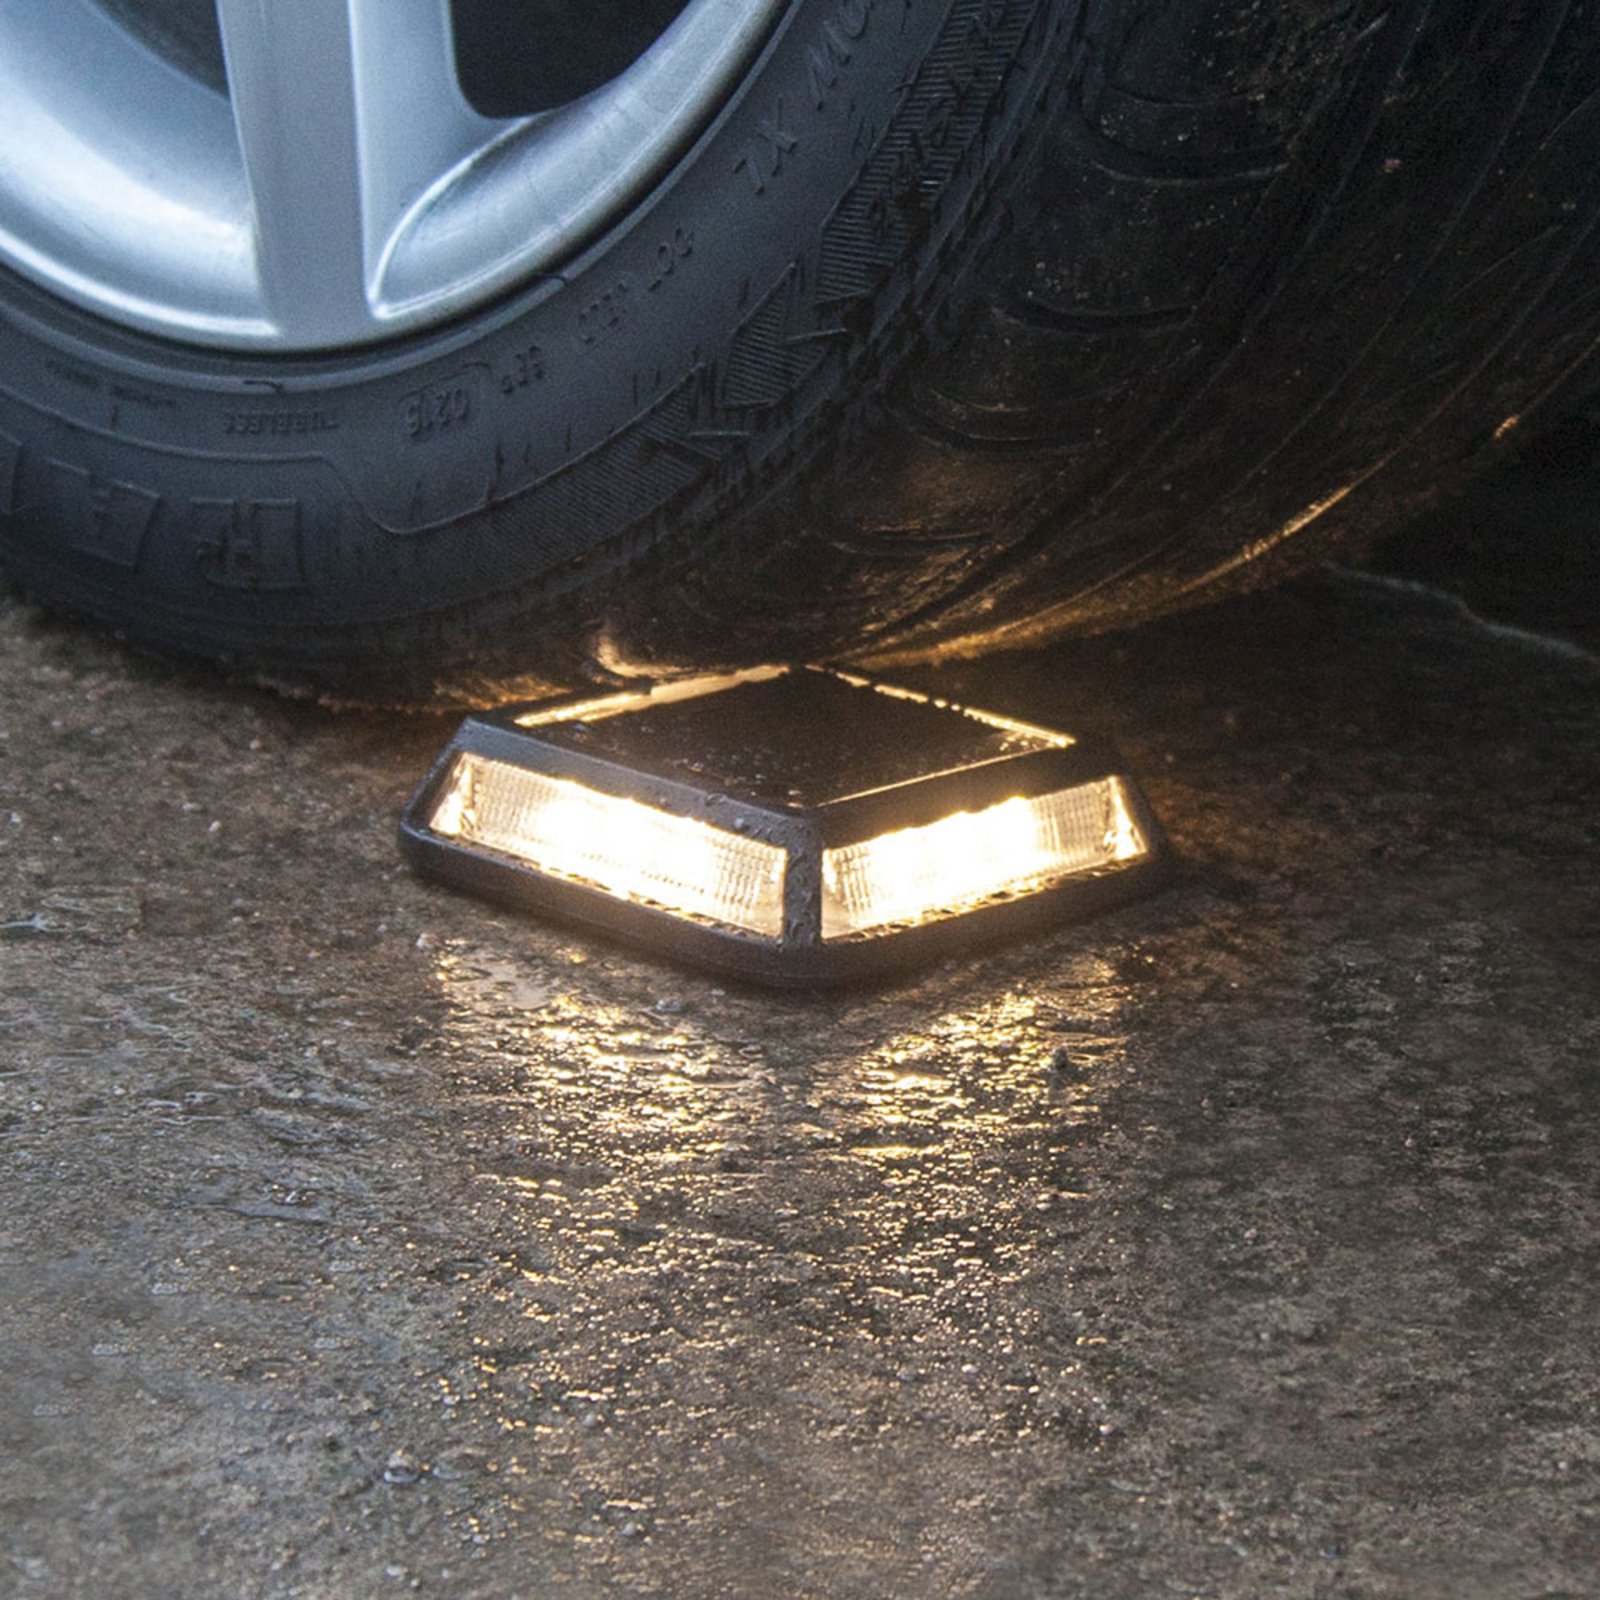 Luz solar LED para entradas de automóveis, com capacidade de carga até